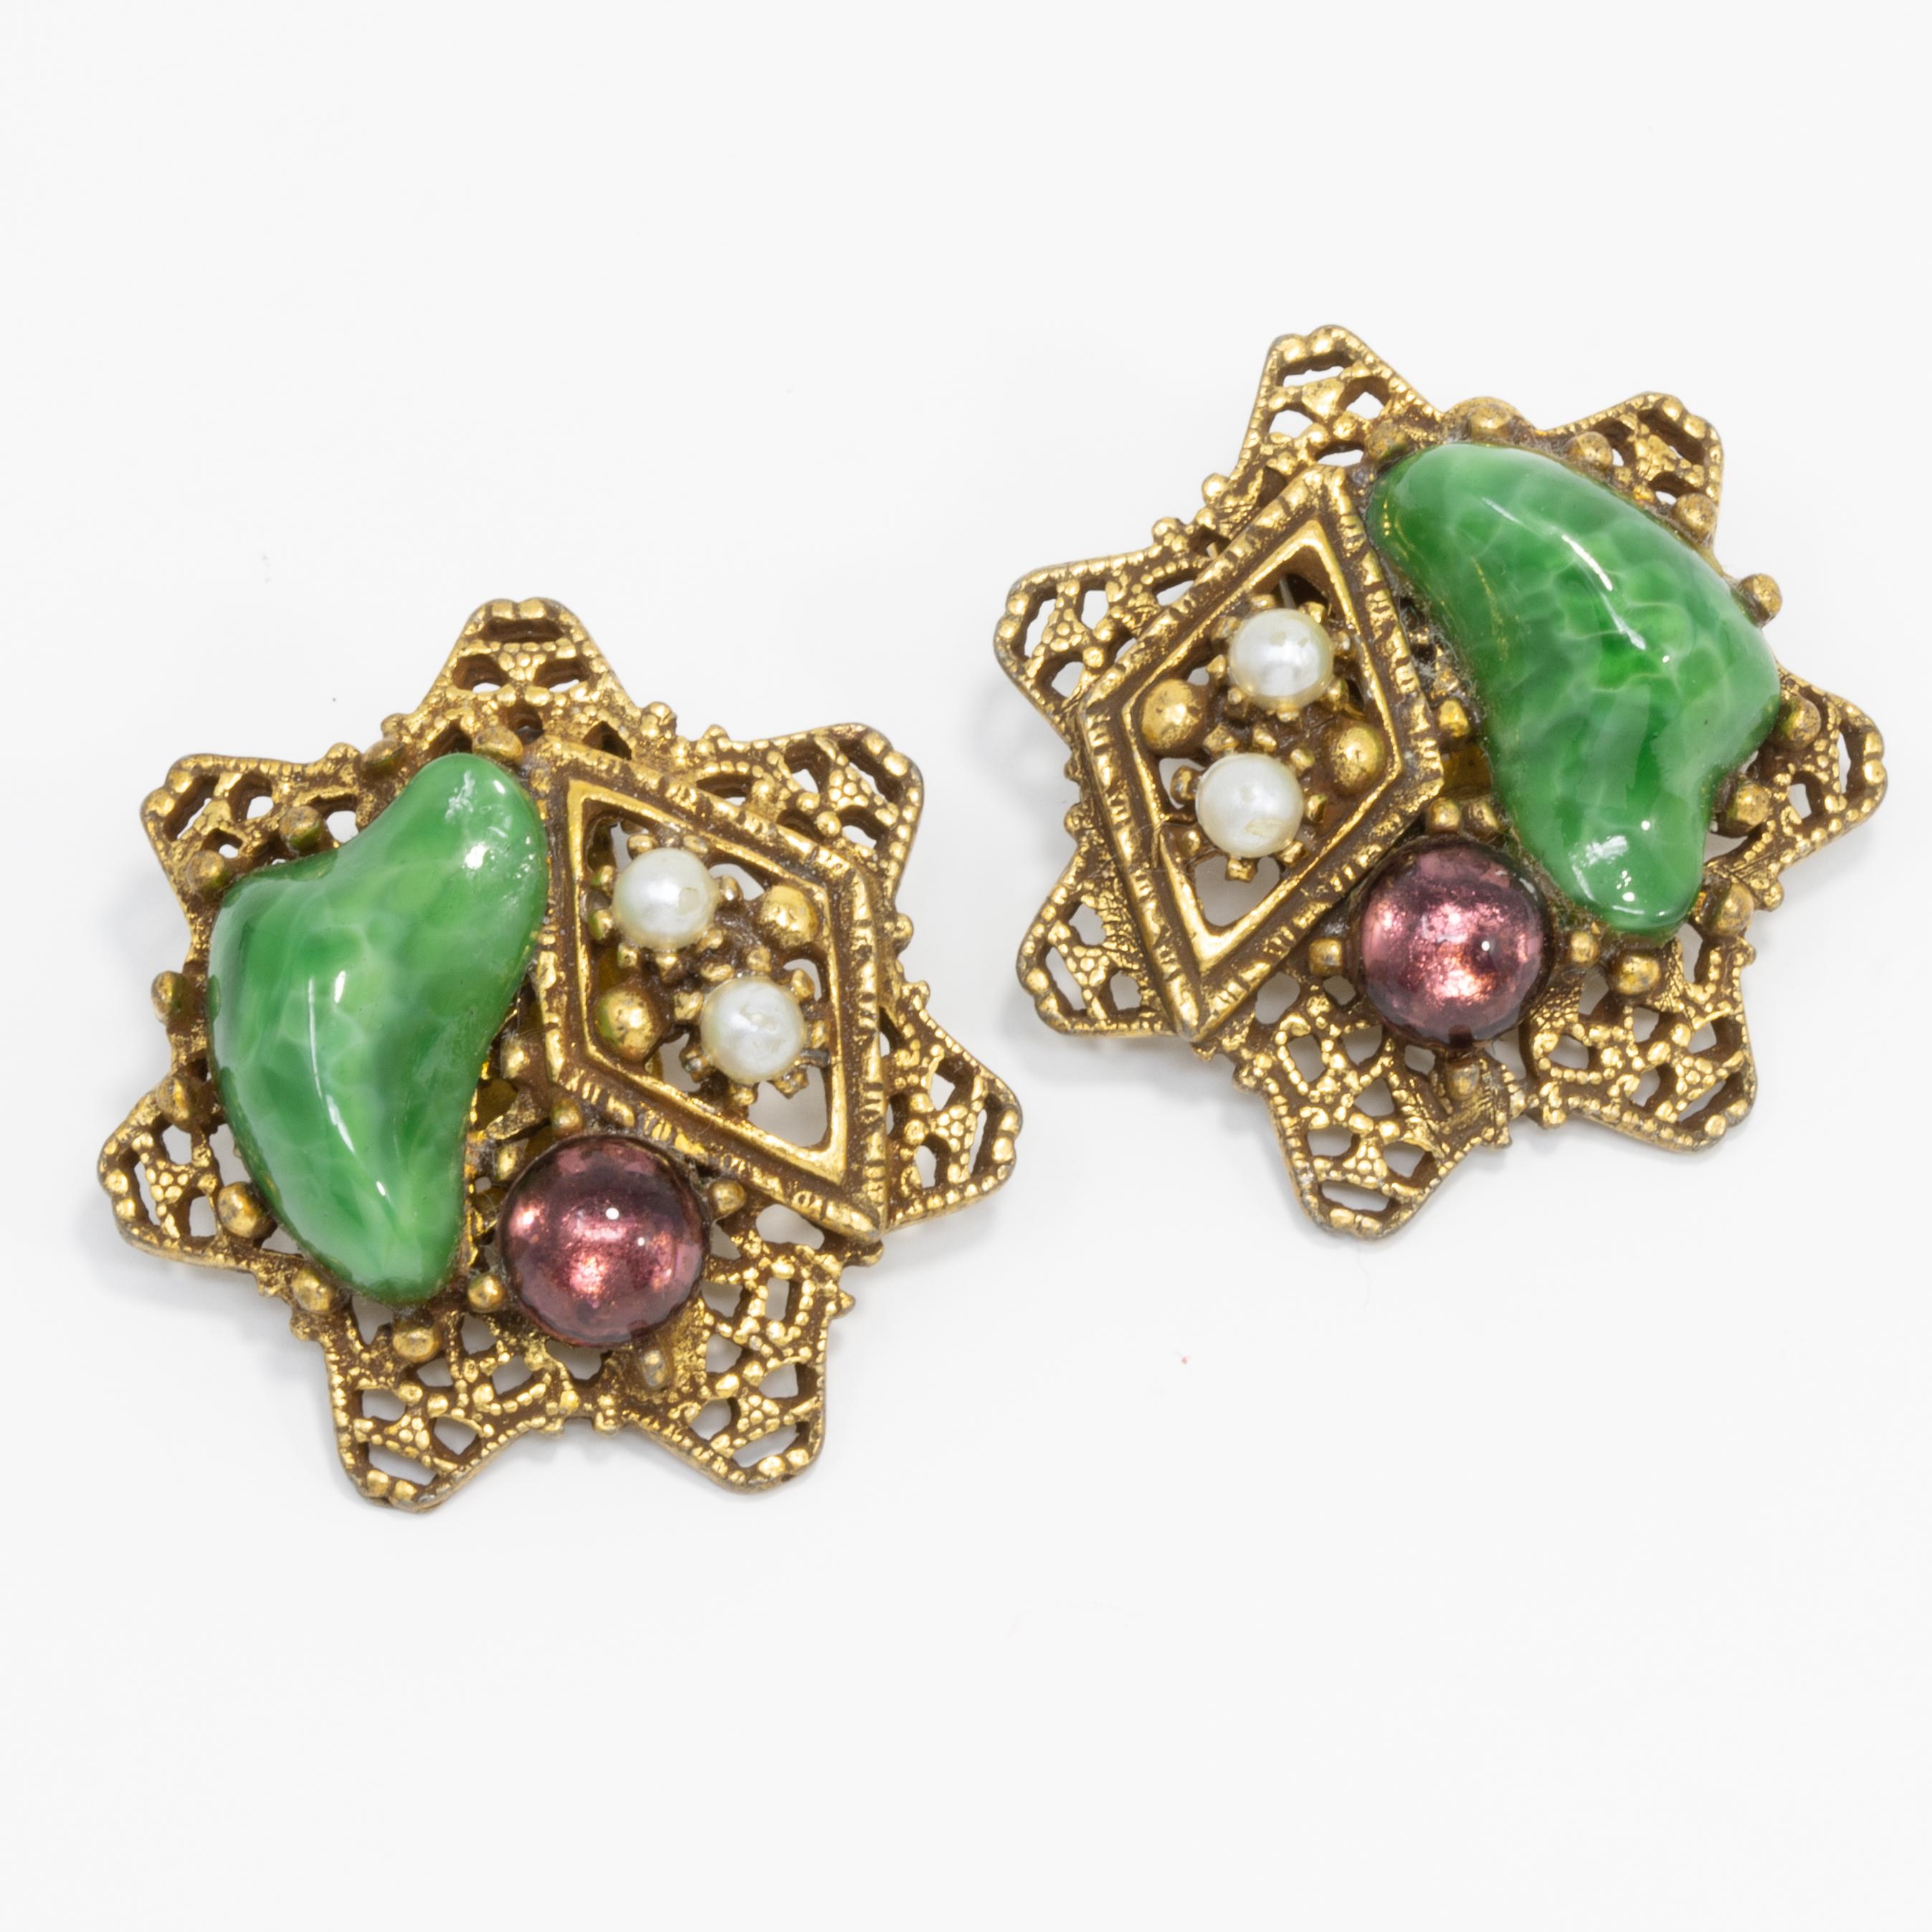 Ein Paar Arthur-Pepper-Ohrringe aus den 1950er Jahren mit goldfarbenen Sternen, die mit Jade- und Amethystkristallen und Kunstperlen verziert sind.

Markenzeichen: Art